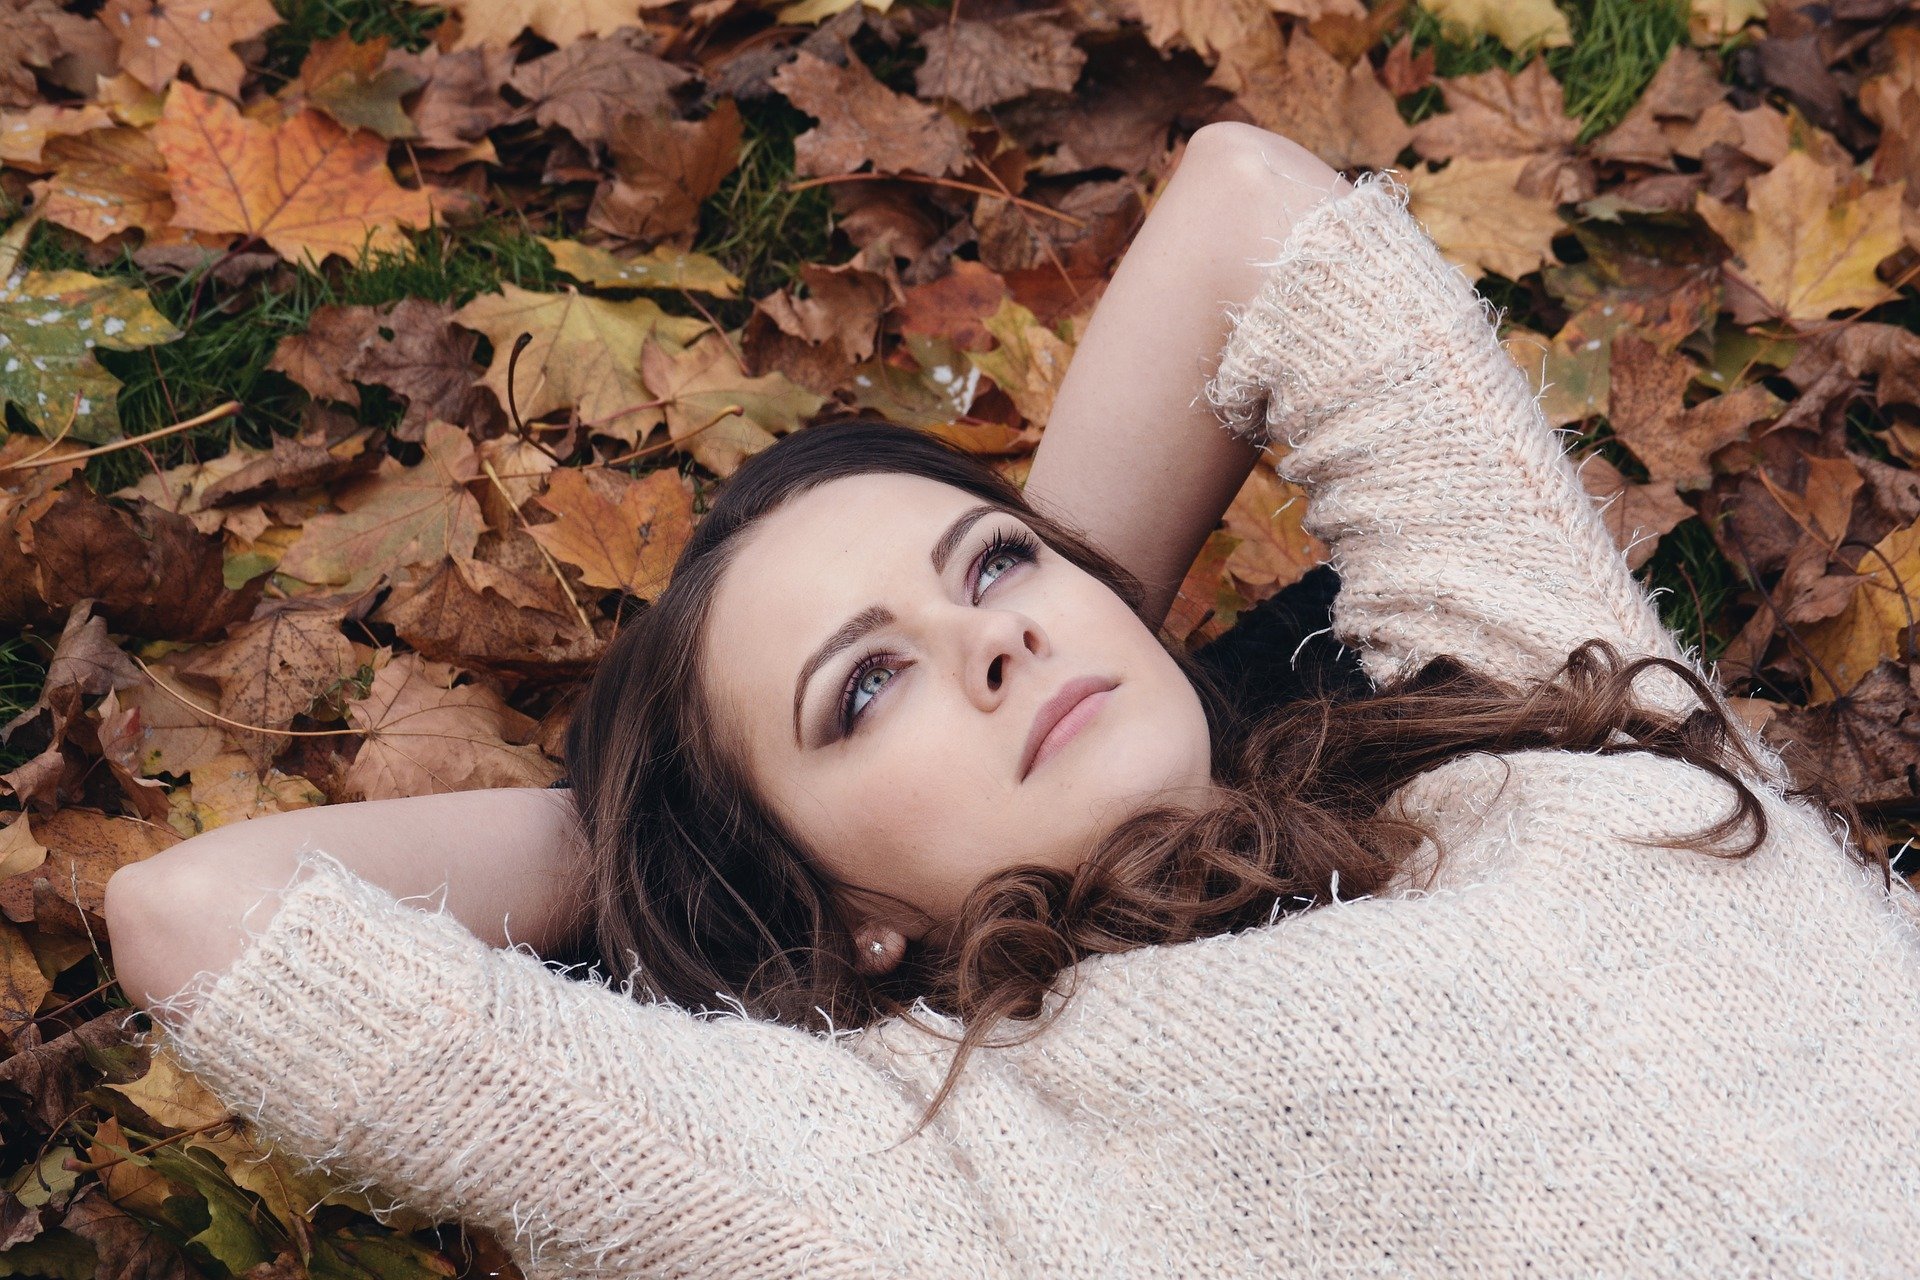 Mulher deitada sobre monte de folhas secas, com expressão pensativa